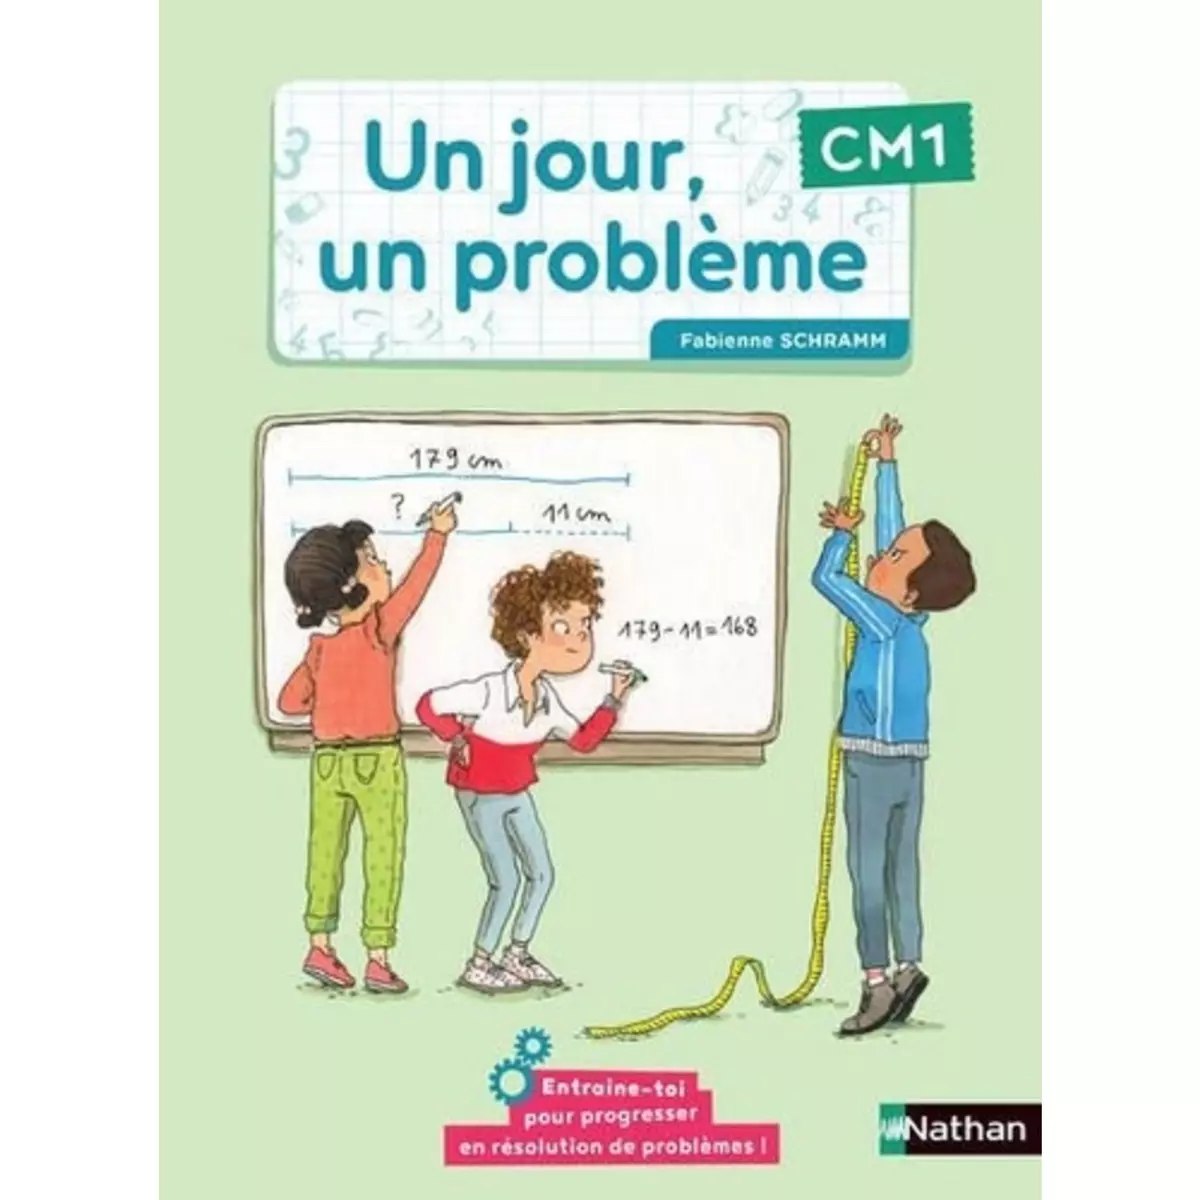  UN JOUR, UN PROBLEME CM1. EDITION 2021, Schramm Fabienne